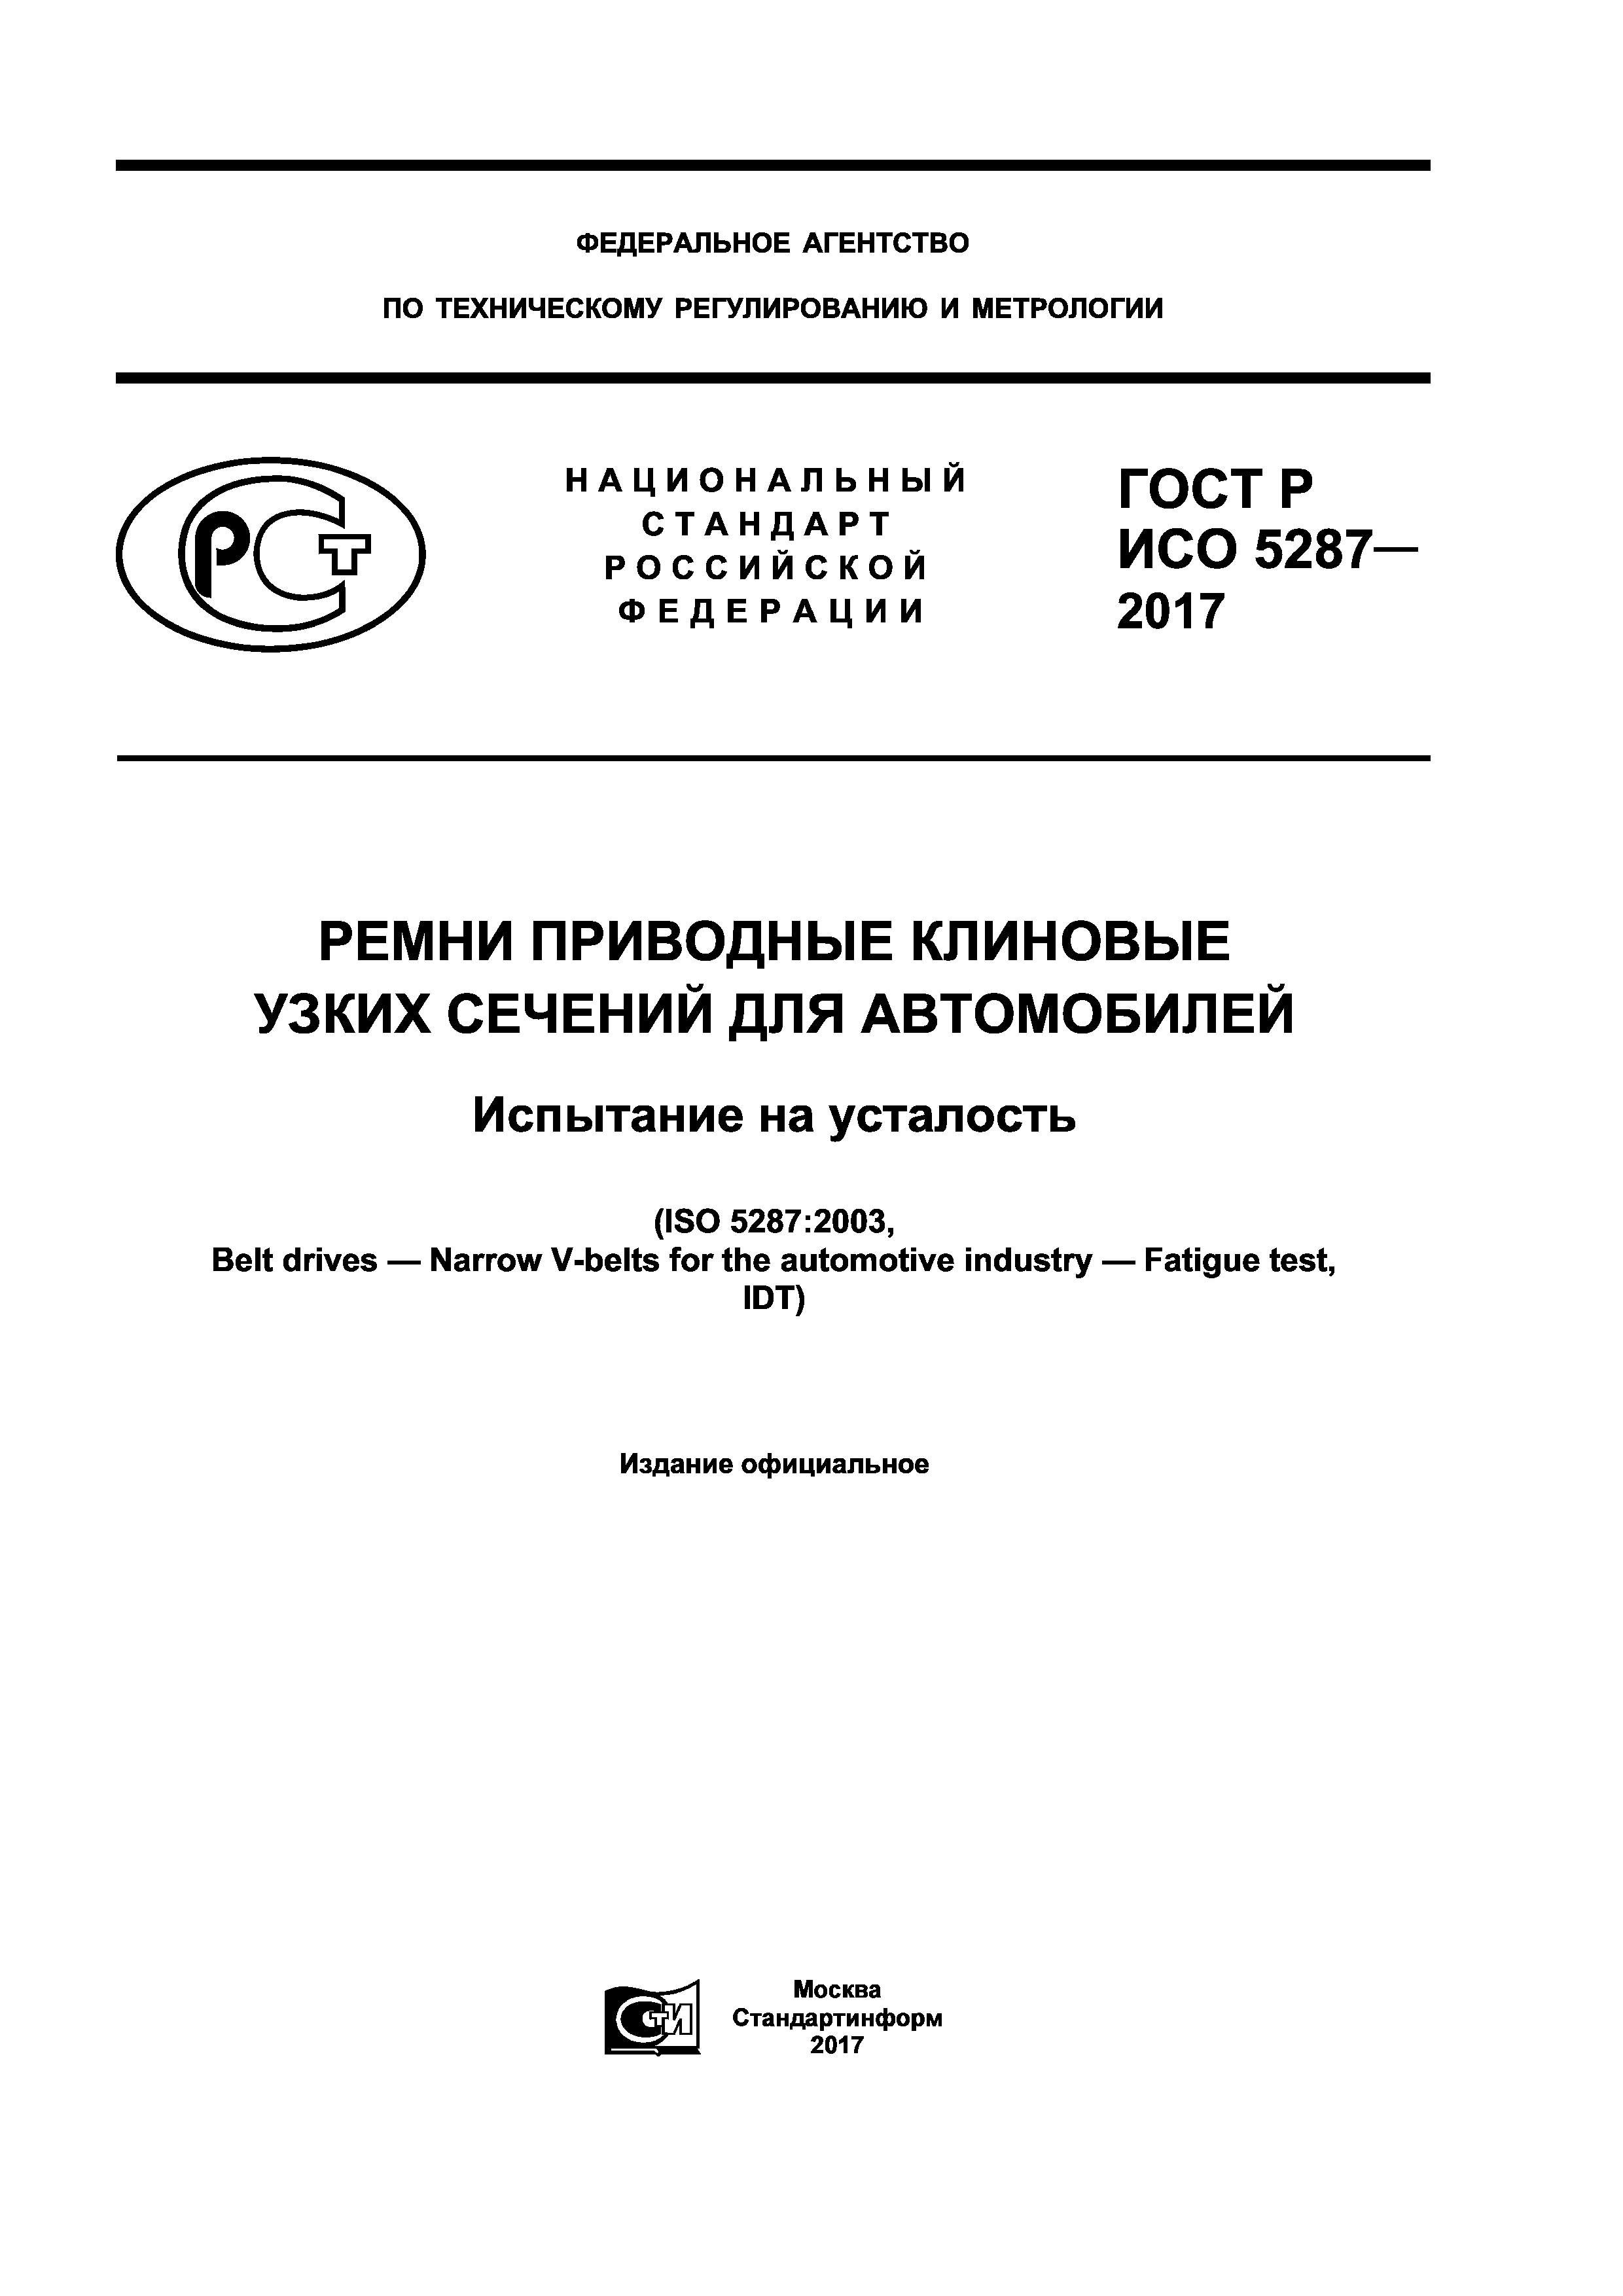 ГОСТ Р ИСО 5287-2017